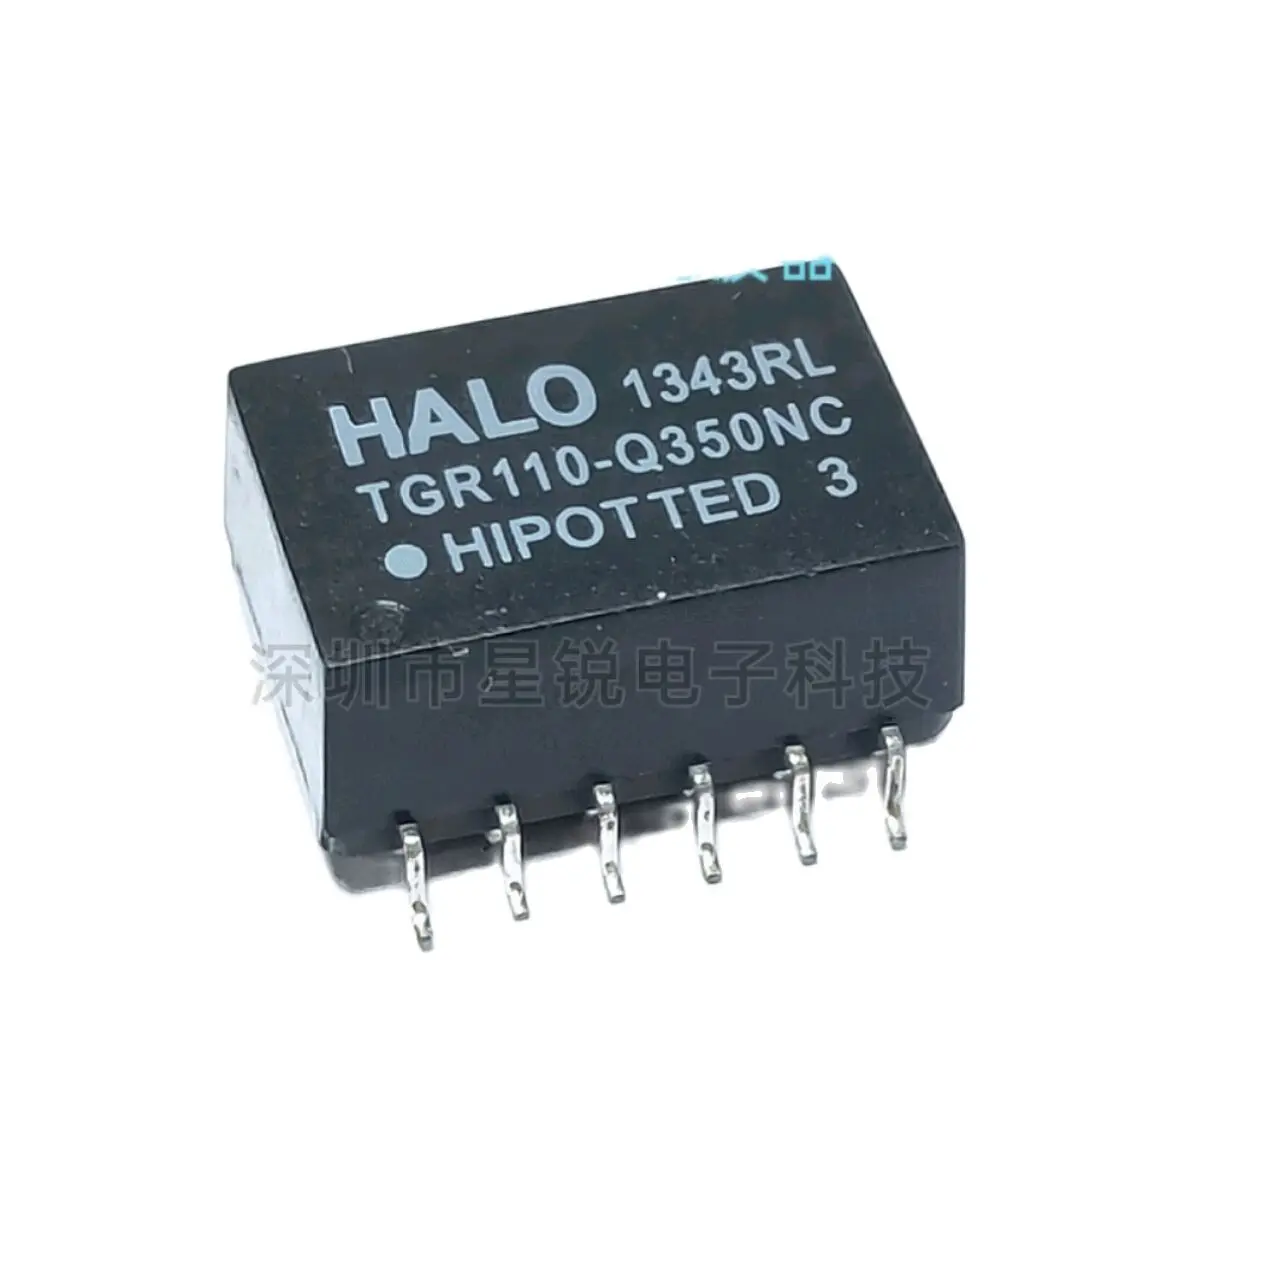 

10 шт./сетевой трансформатор TGR110-Q350NC HALO SOP12, новая оригинальная точка прямой съемки, гарантия качества